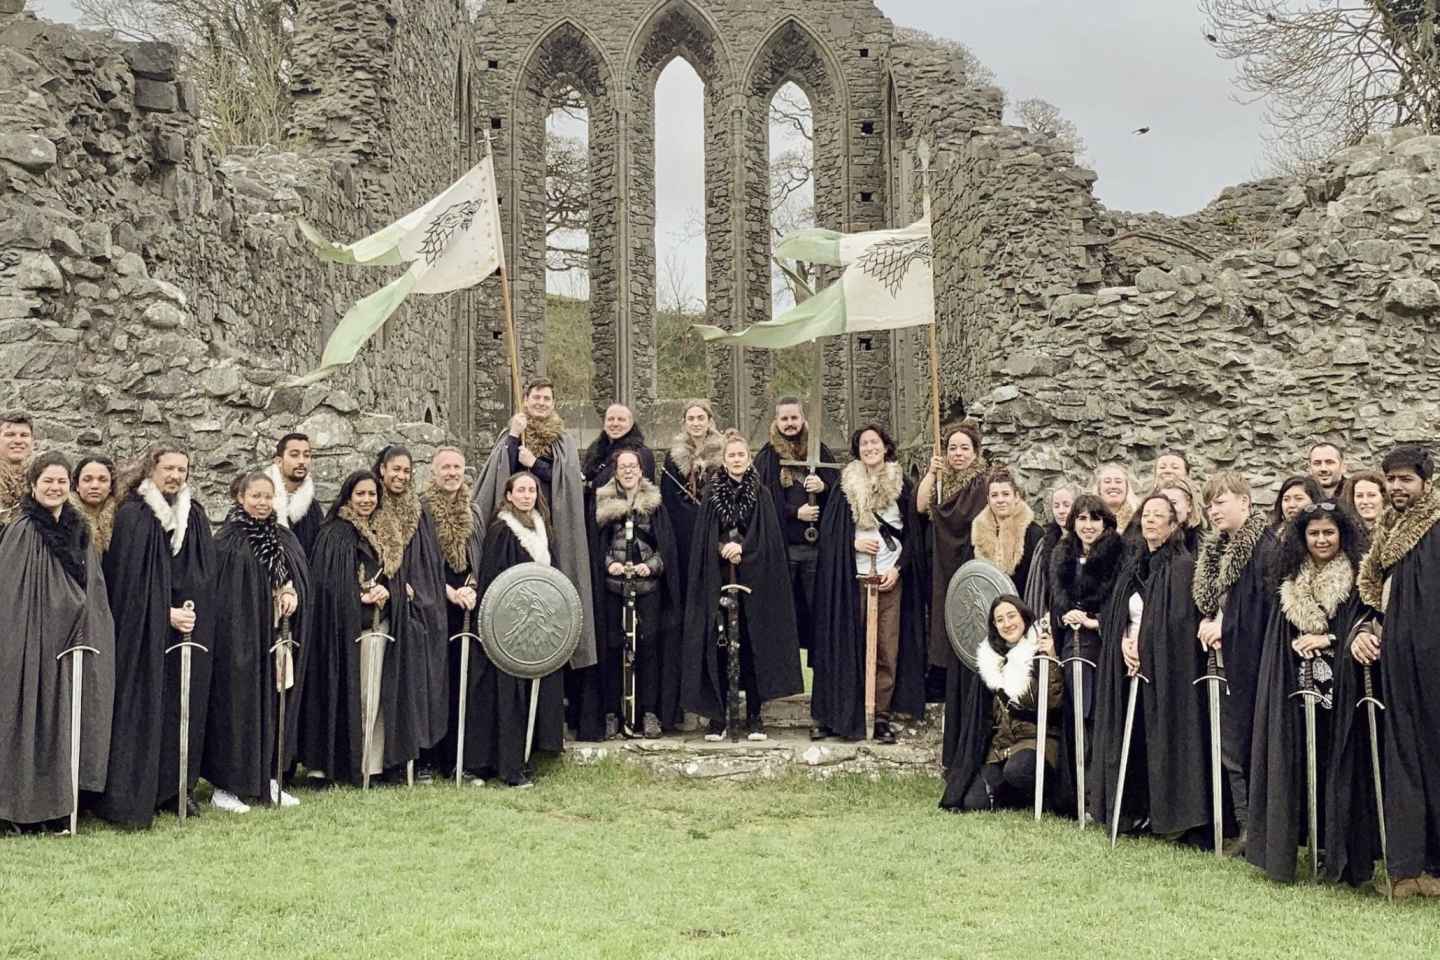 Ab Dublin: Tagestour zu den Drehorten von Game of Thrones